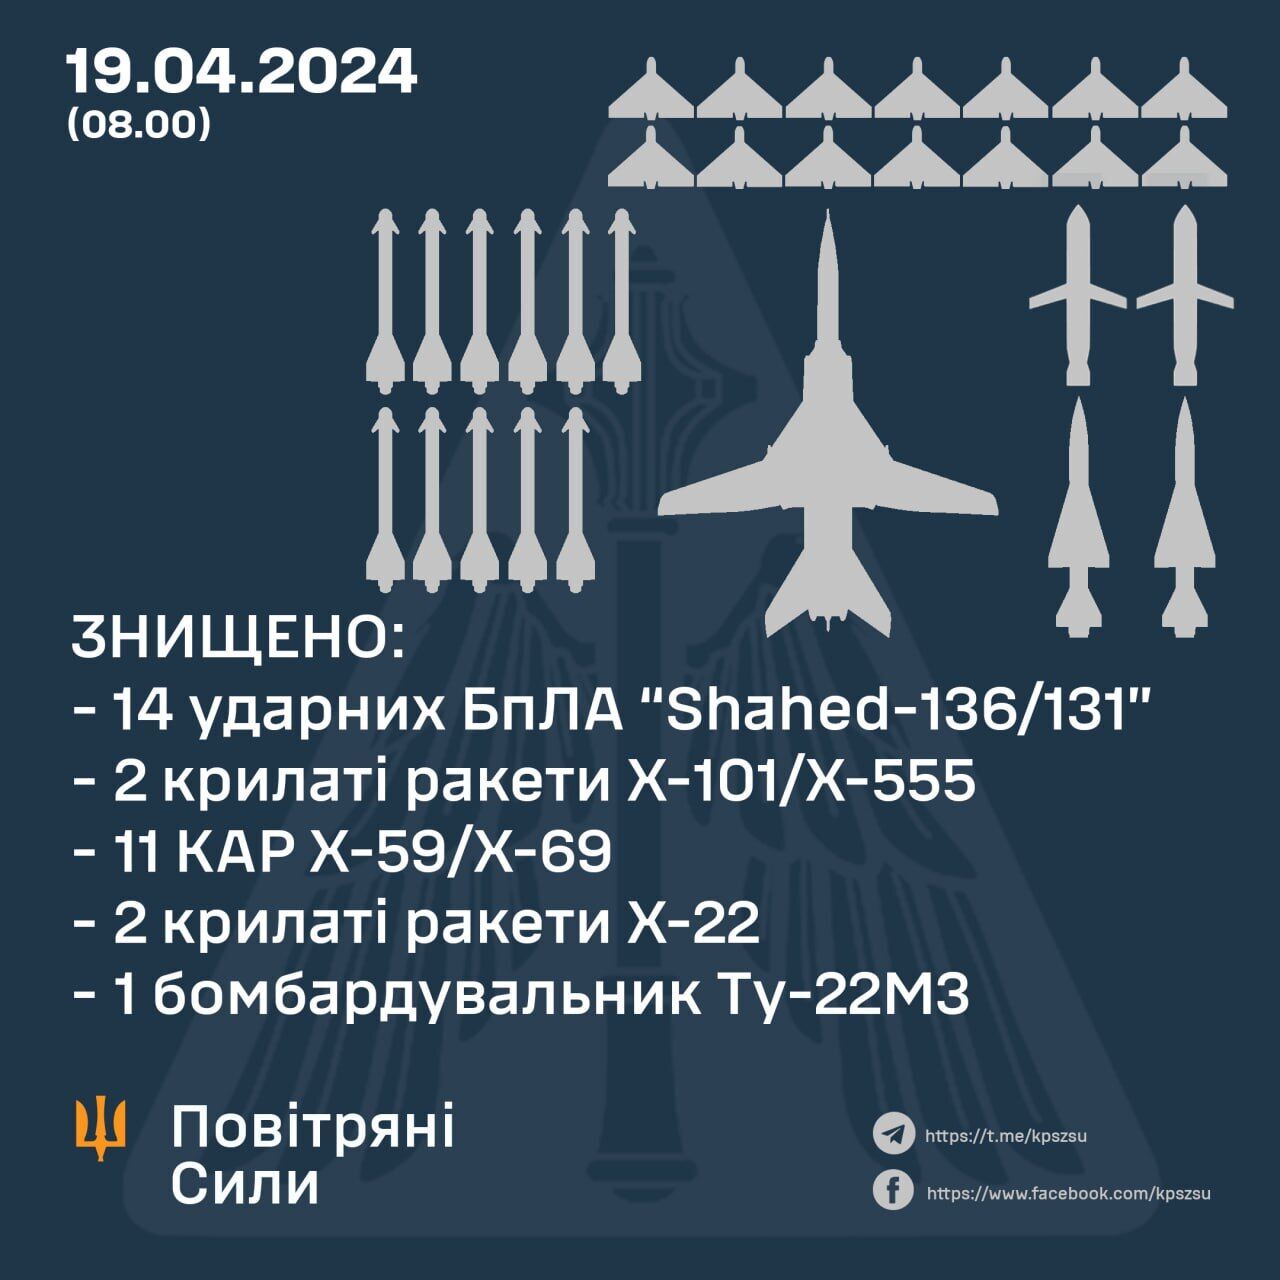 Минус 15 ракет, 14 "Шахедов" и бомбардировщик: в Воздушных силах рассказали об отражении атаки РФ